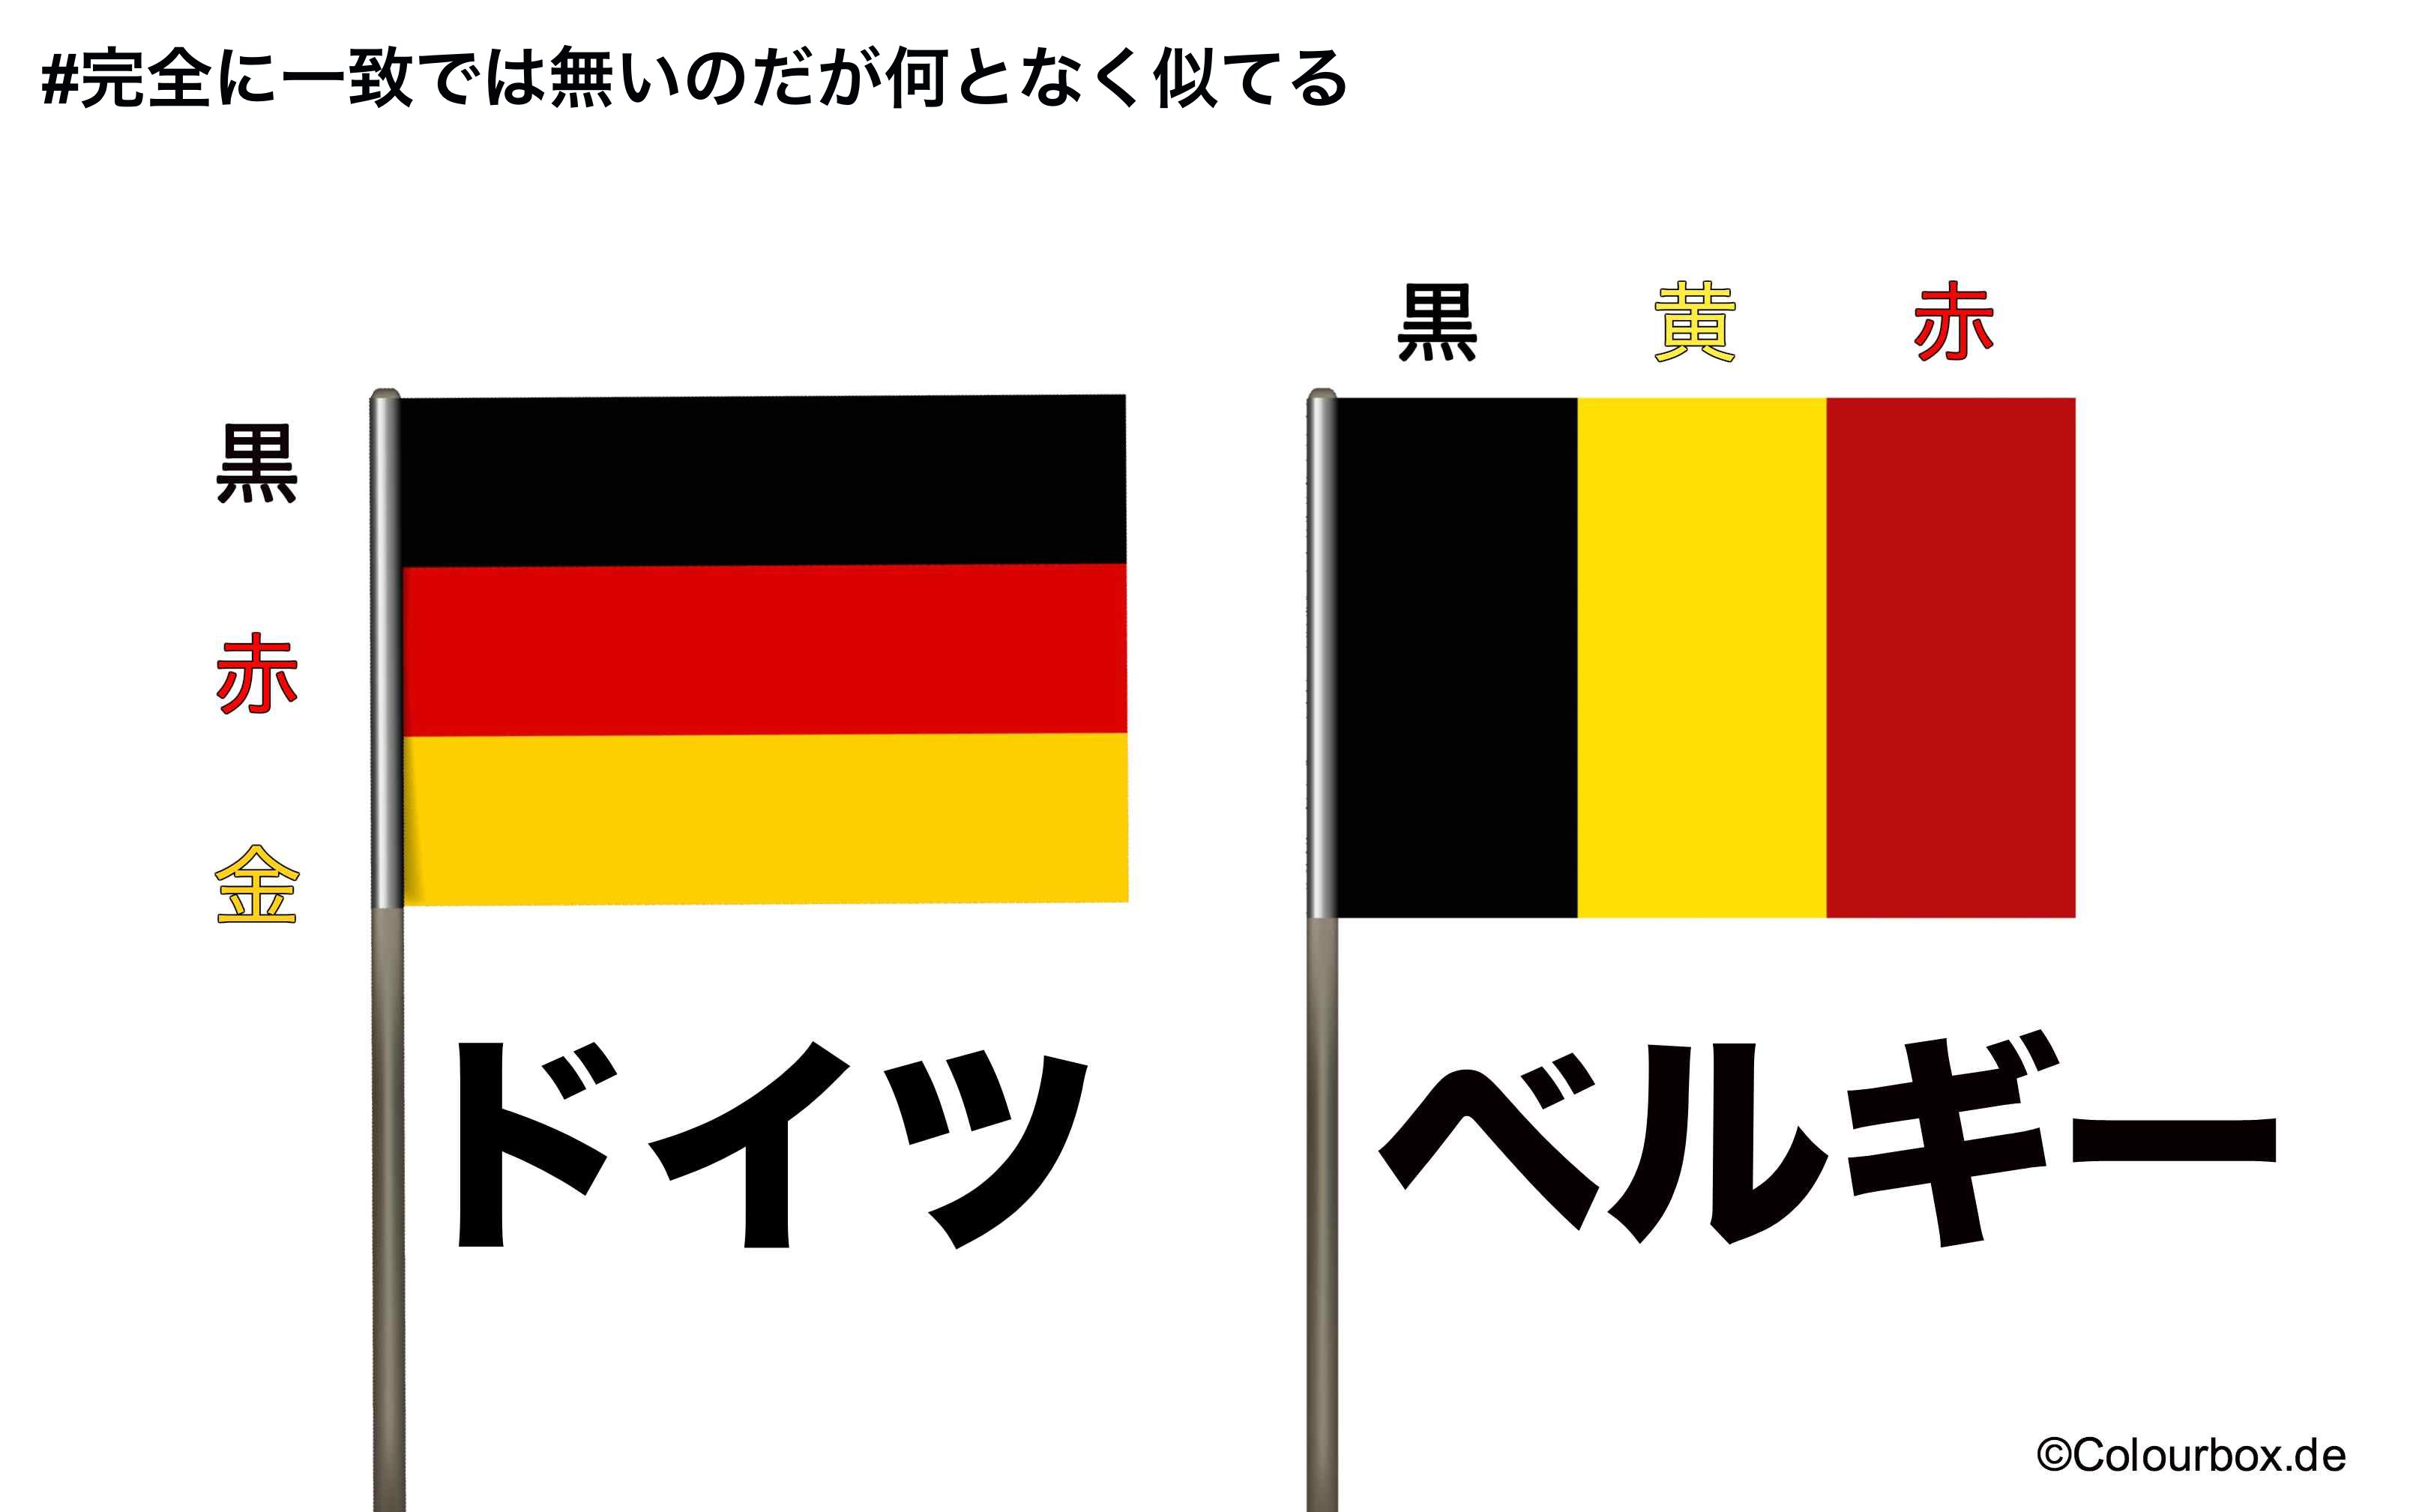 ドイツ大使館 完全に一致では無いのだが何となく似てる 黒赤金 どうみても金 ドイツの旗は 黄色ではない ベルギー大使館さん いつも巻き込んでごめんなさい T Co Nwpxduxg3a Twitter